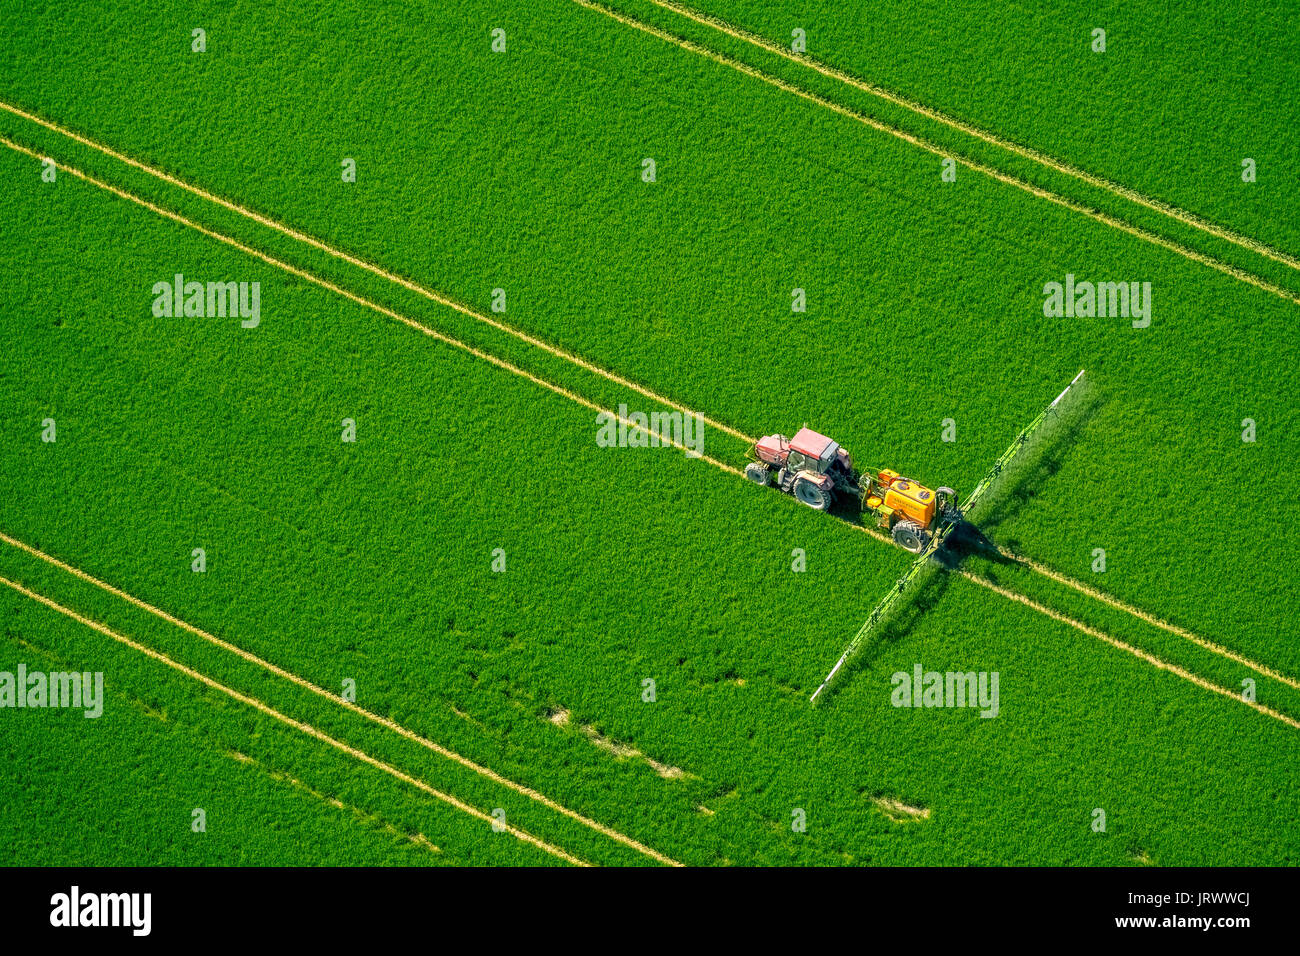 Tracker la pulvérisation de pesticides sur un champ de grain vert, l'agriculture, photo aérienne, Warstein, Sauerland, Rhénanie du Nord-Westphalie Banque D'Images